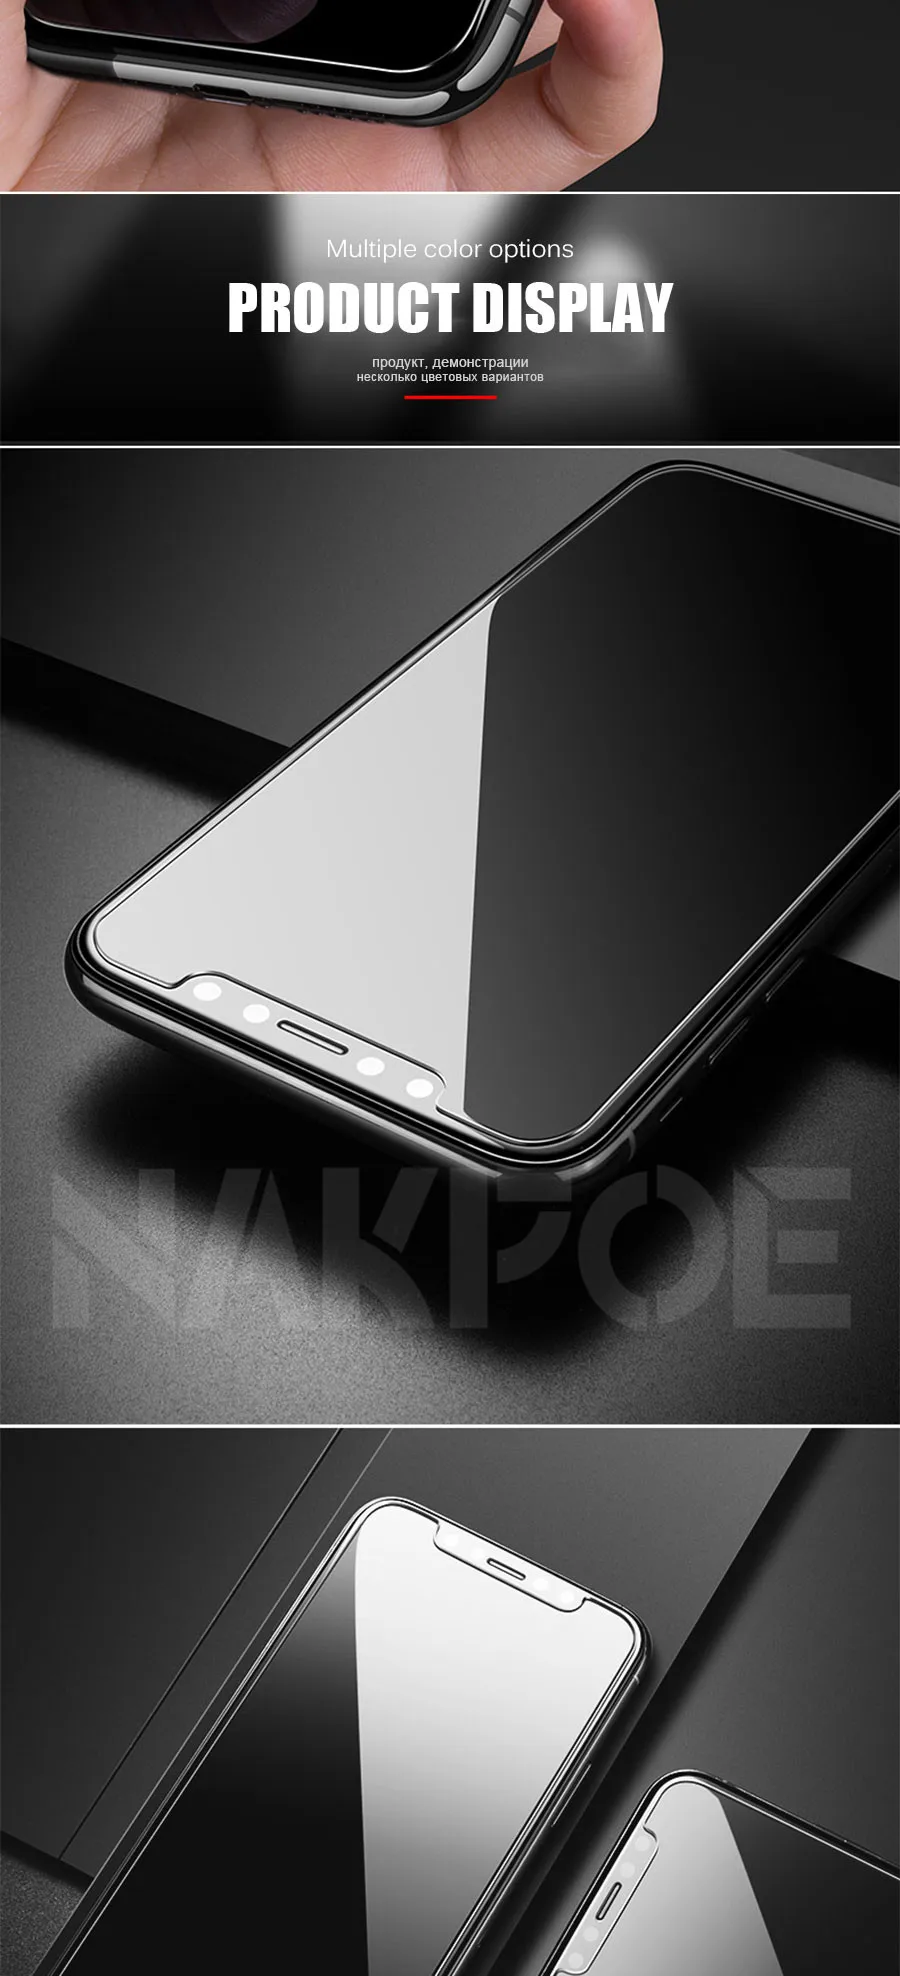 Защитное стекло для iPhone X XR XS 11 Pro Max защита экрана закаленное стекло для iPhone 7 8 6 6S Plus 5 5S SE стекло